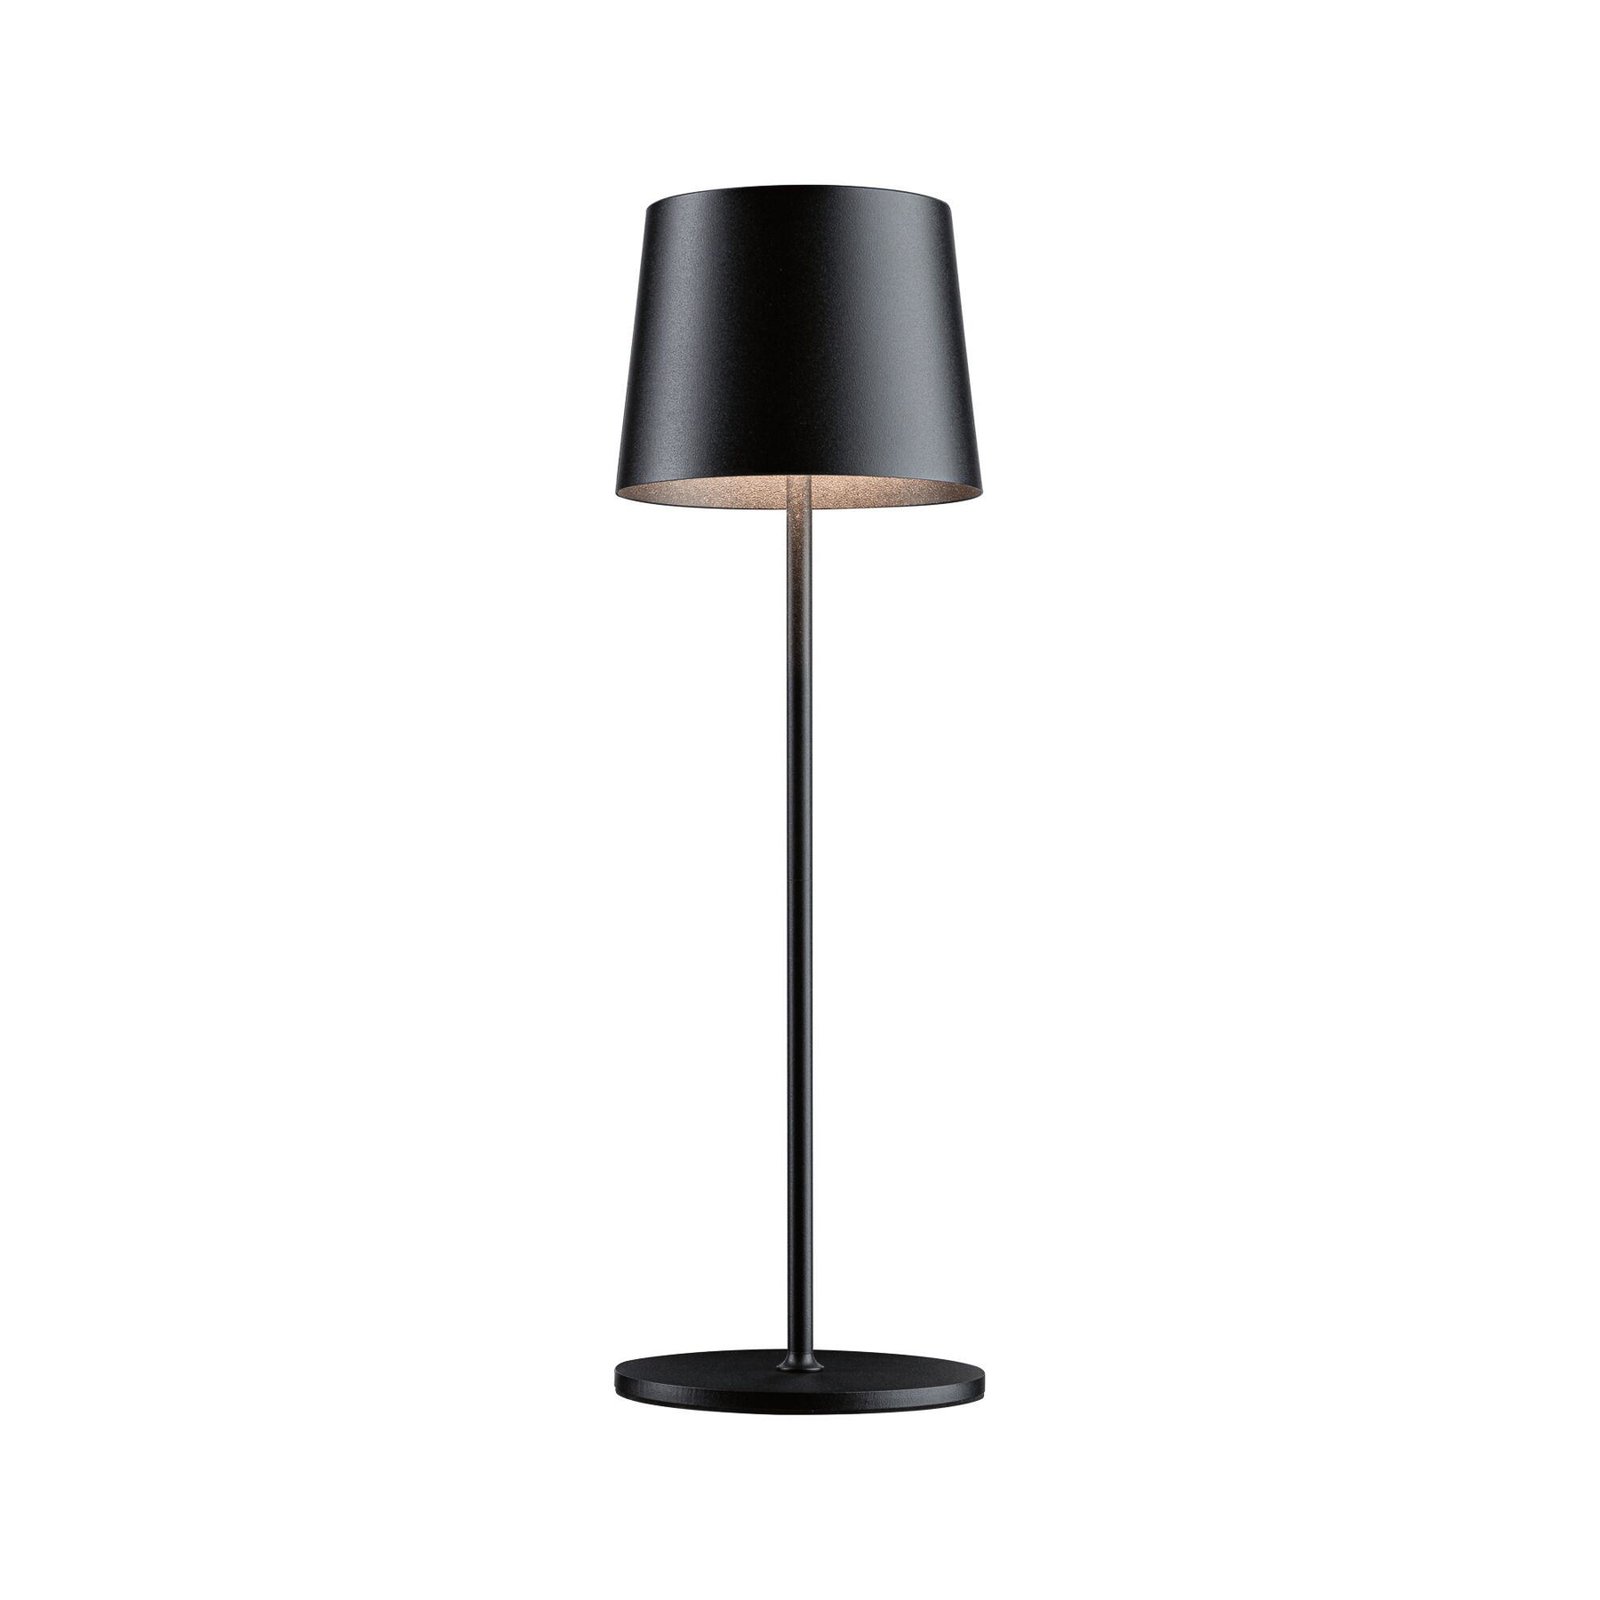 Paulmann LED table lamp Gilo, black, plastic, IP44